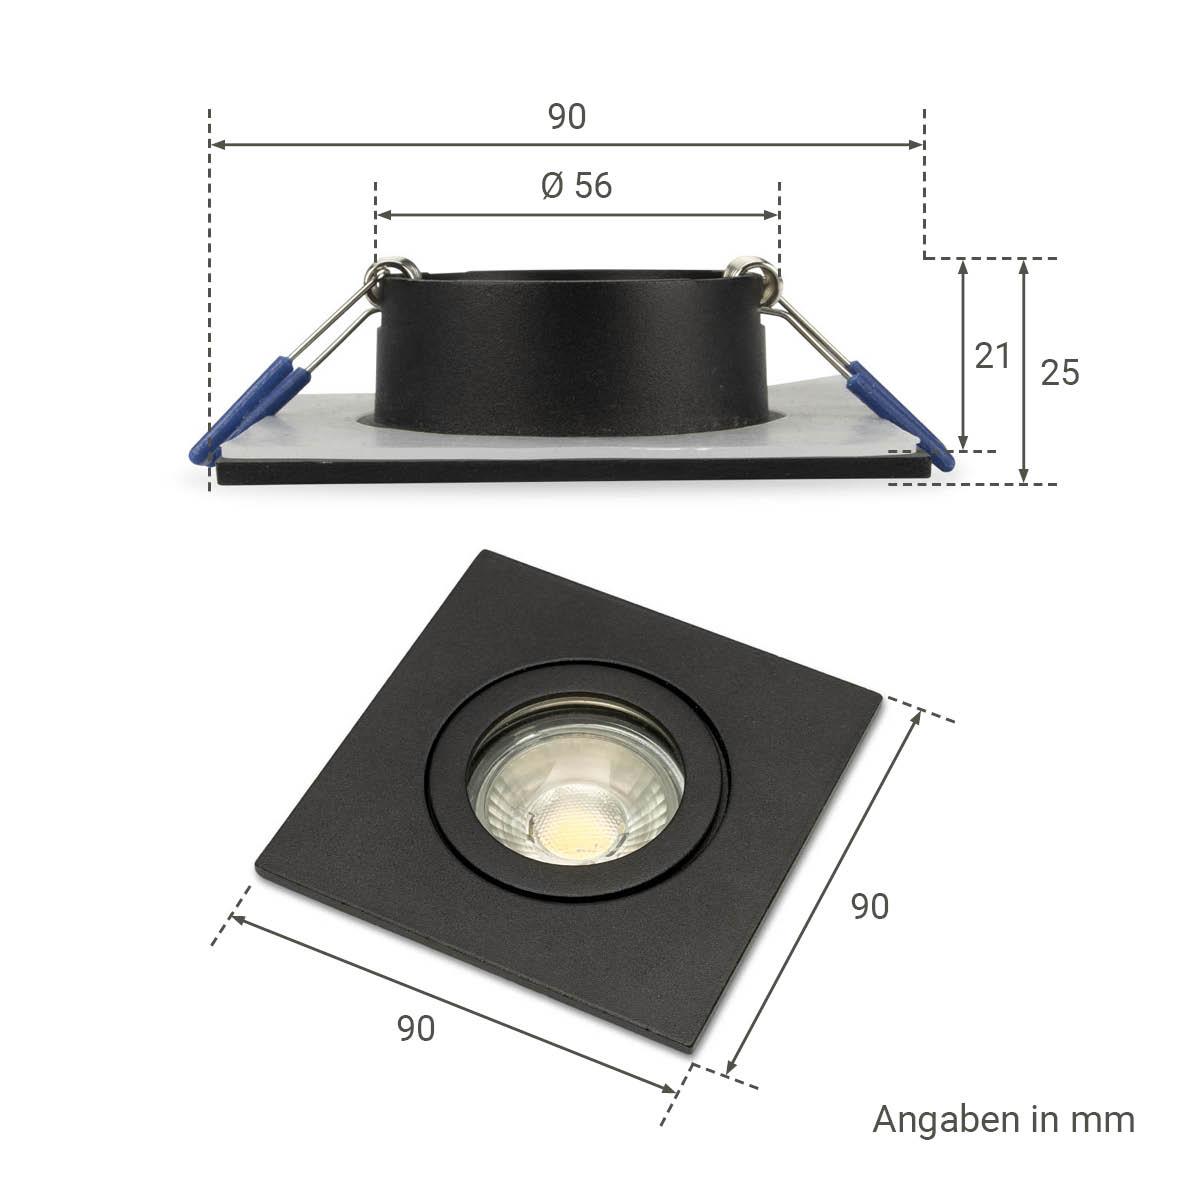 Einbauspot IP44 eckig - Farbe: schwarz - LED Leuchtmittel:  GU10 5W warmweiß